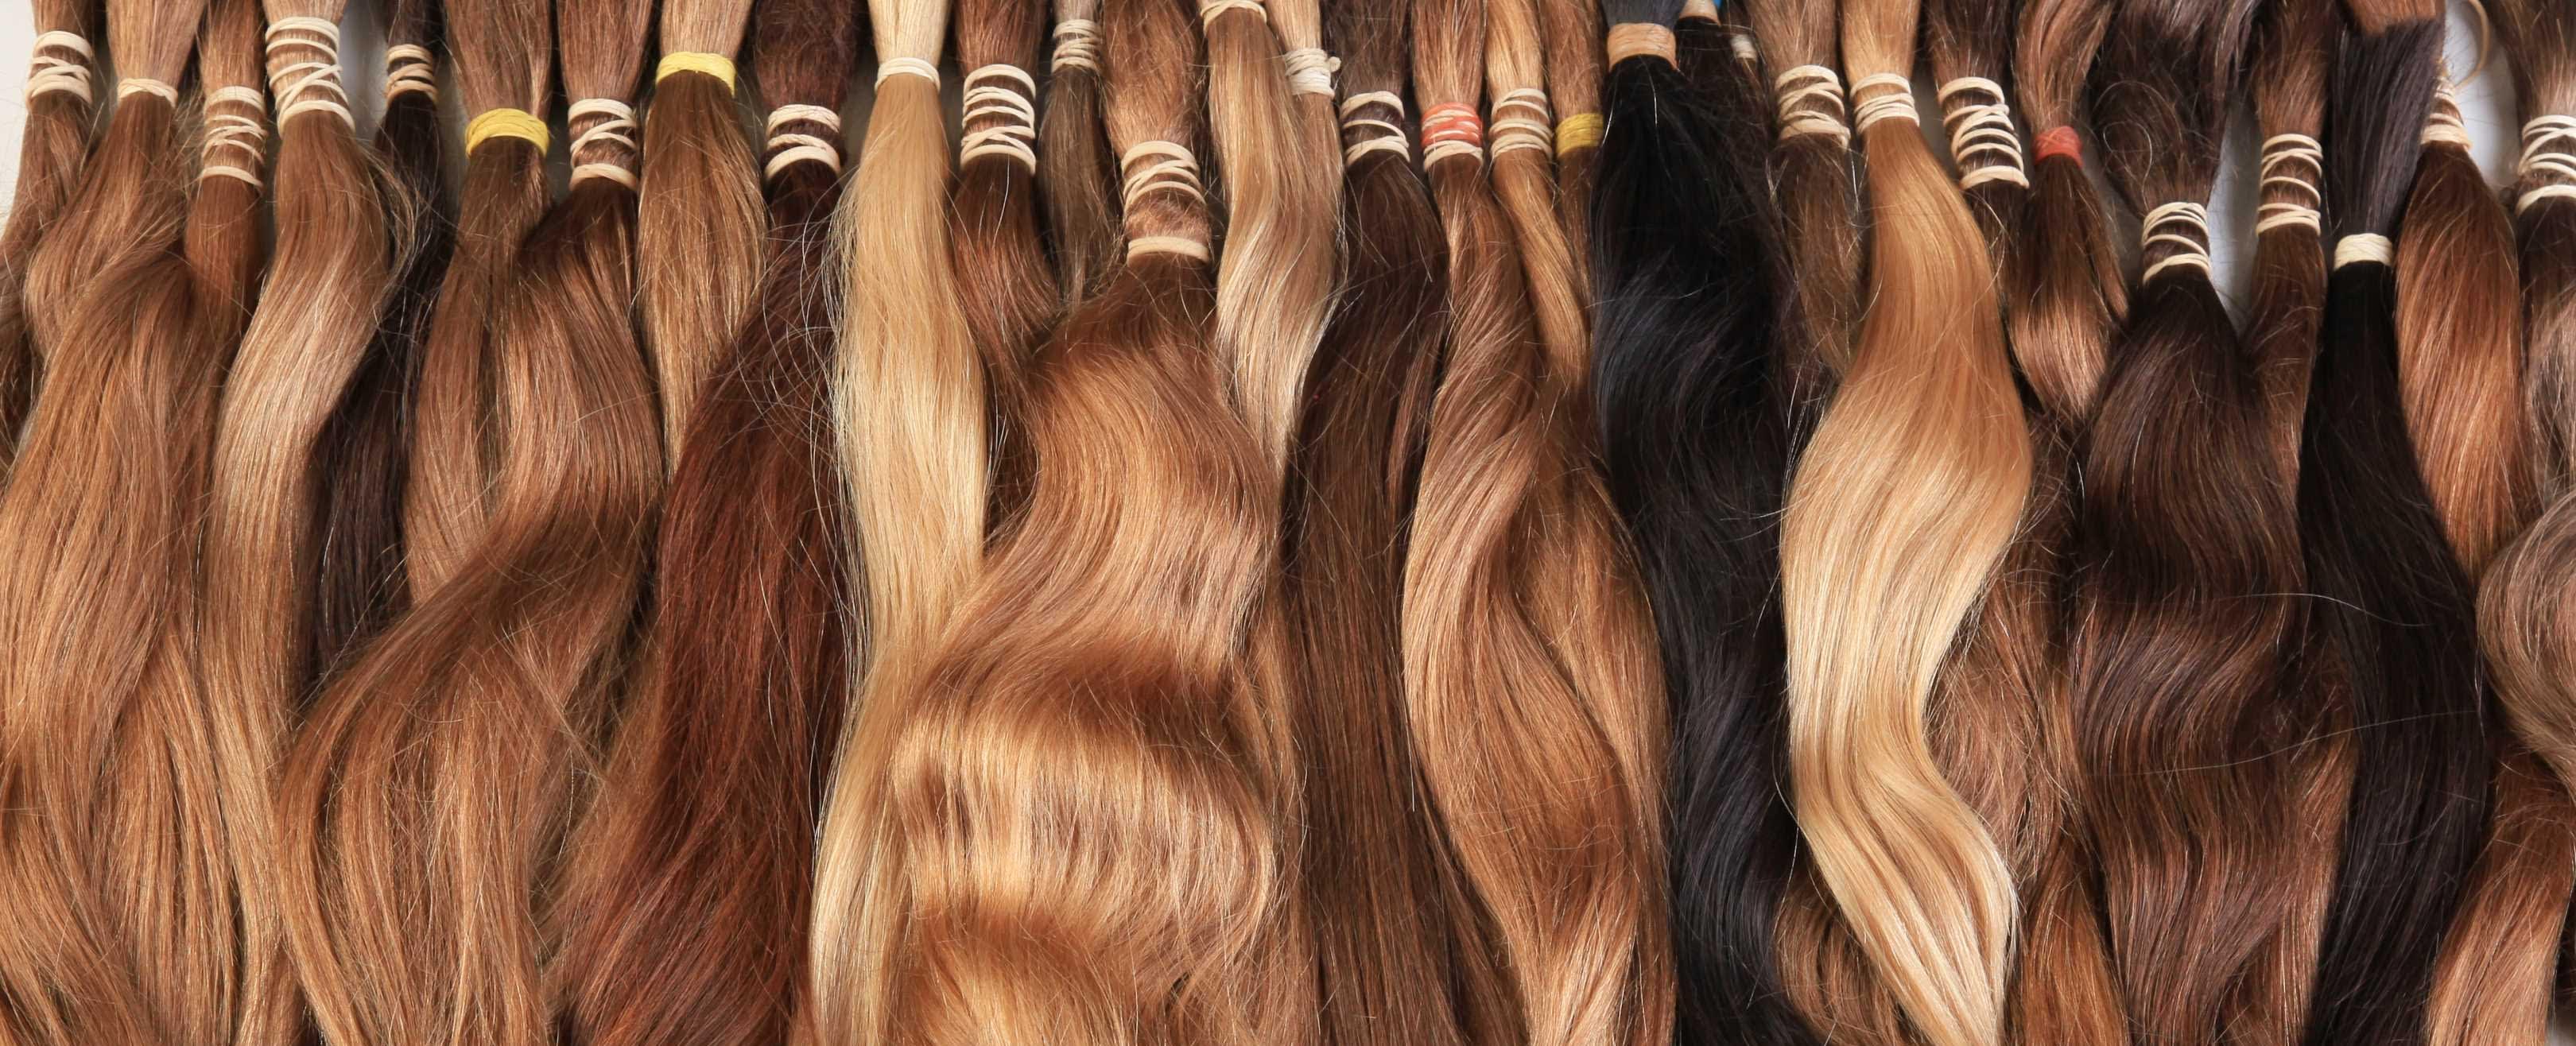 Итальянское наращивание. Итальянское наращивание волос. 1080×1920 итальянское наращивание волос. Top website Design of the hair Extension Salon.